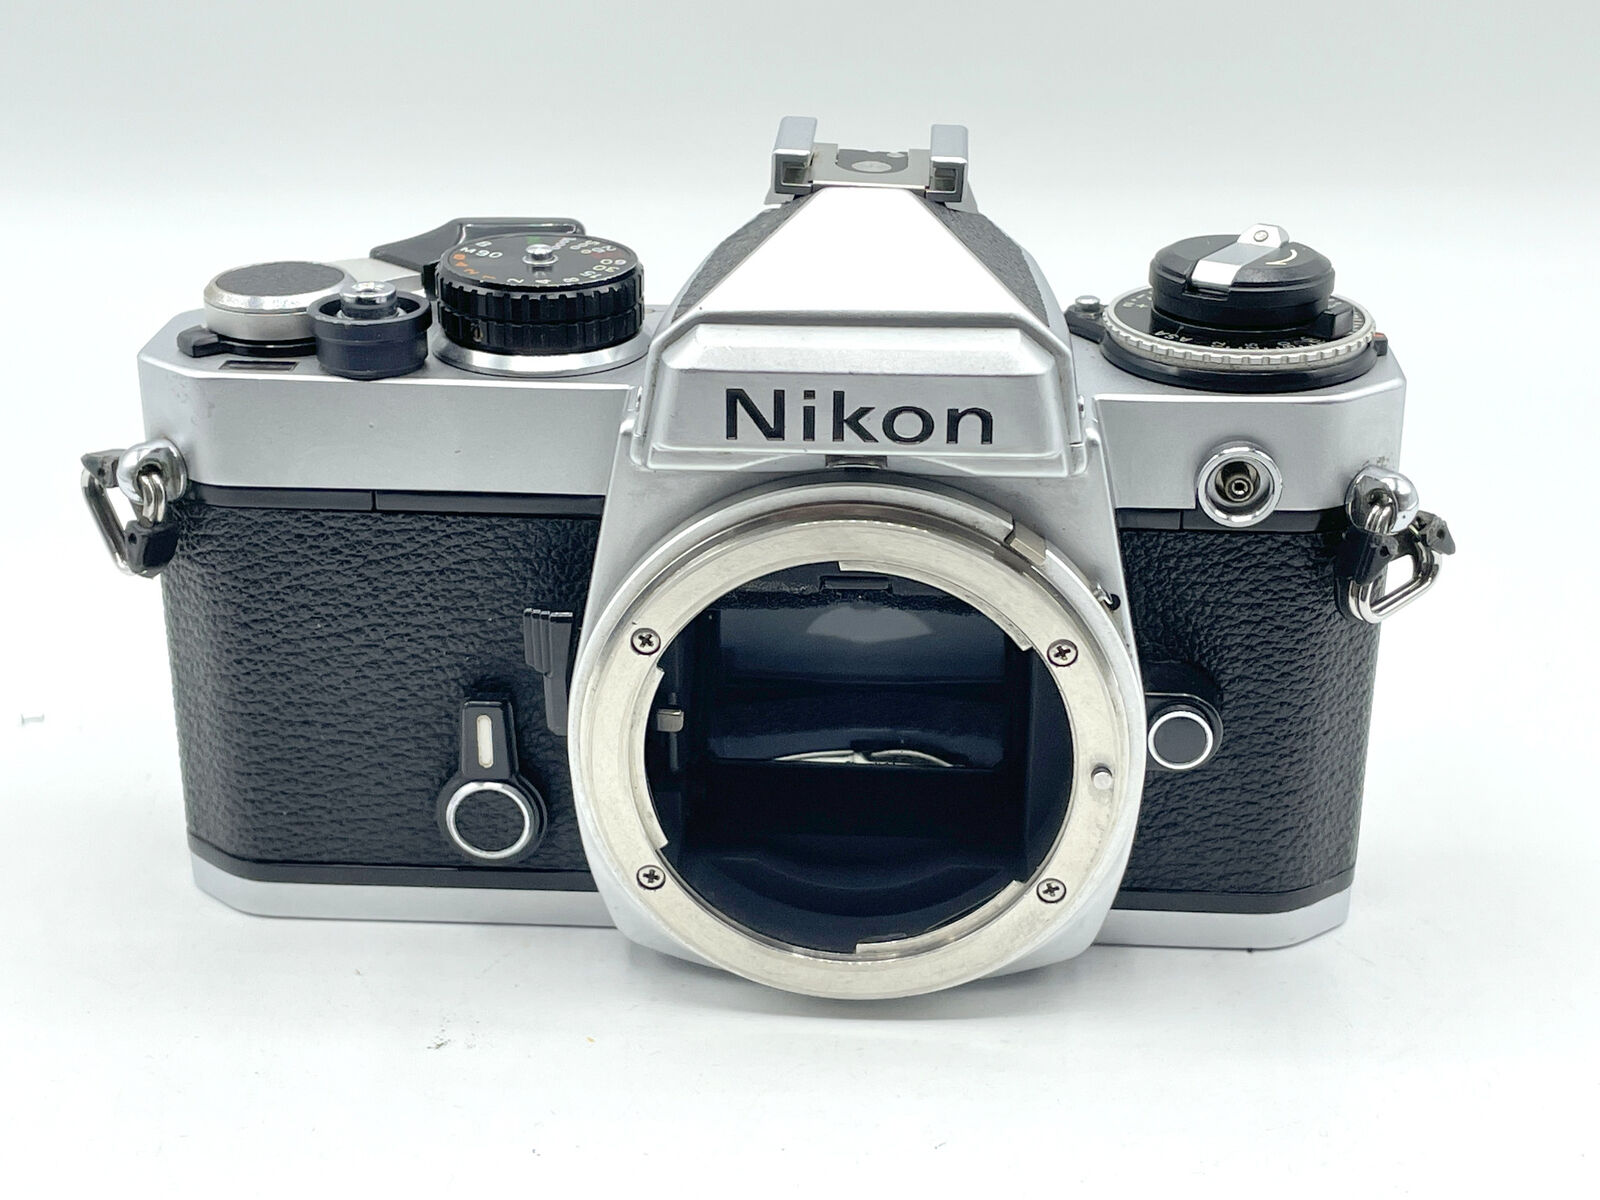 Nikon FE Manual Camera in Chrome or Black w/ optional 50mm 1.8 or 1.4 AI lens